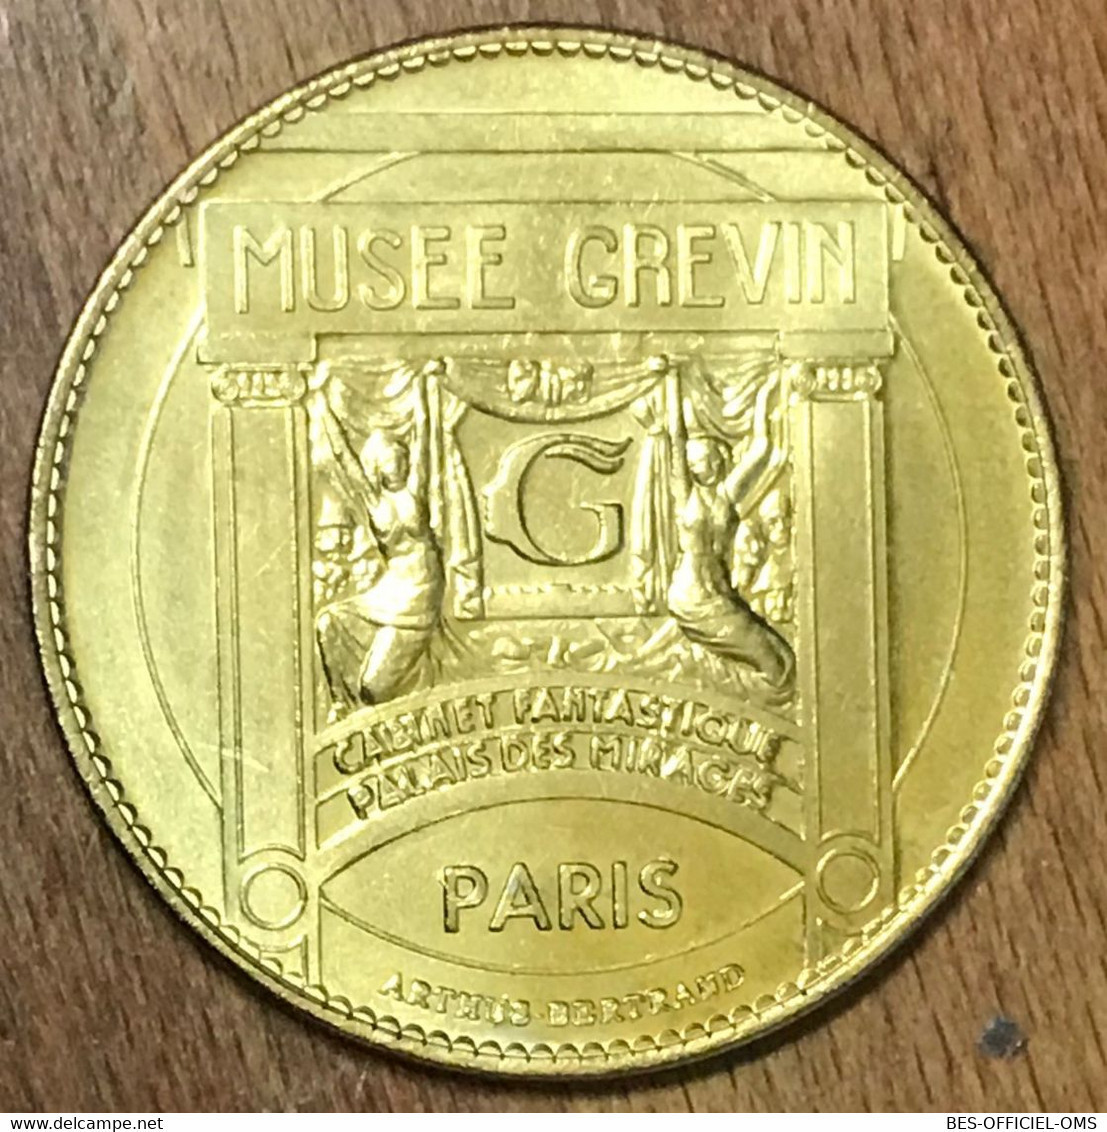 75009 MICHAEL JACKSON PARIS MUSÉE GRÉVIN AB MEDAILLE ARTHUS-BERTRAND JETON TOURISTIQUE MEDALS COINS TOKENS - Zonder Datum